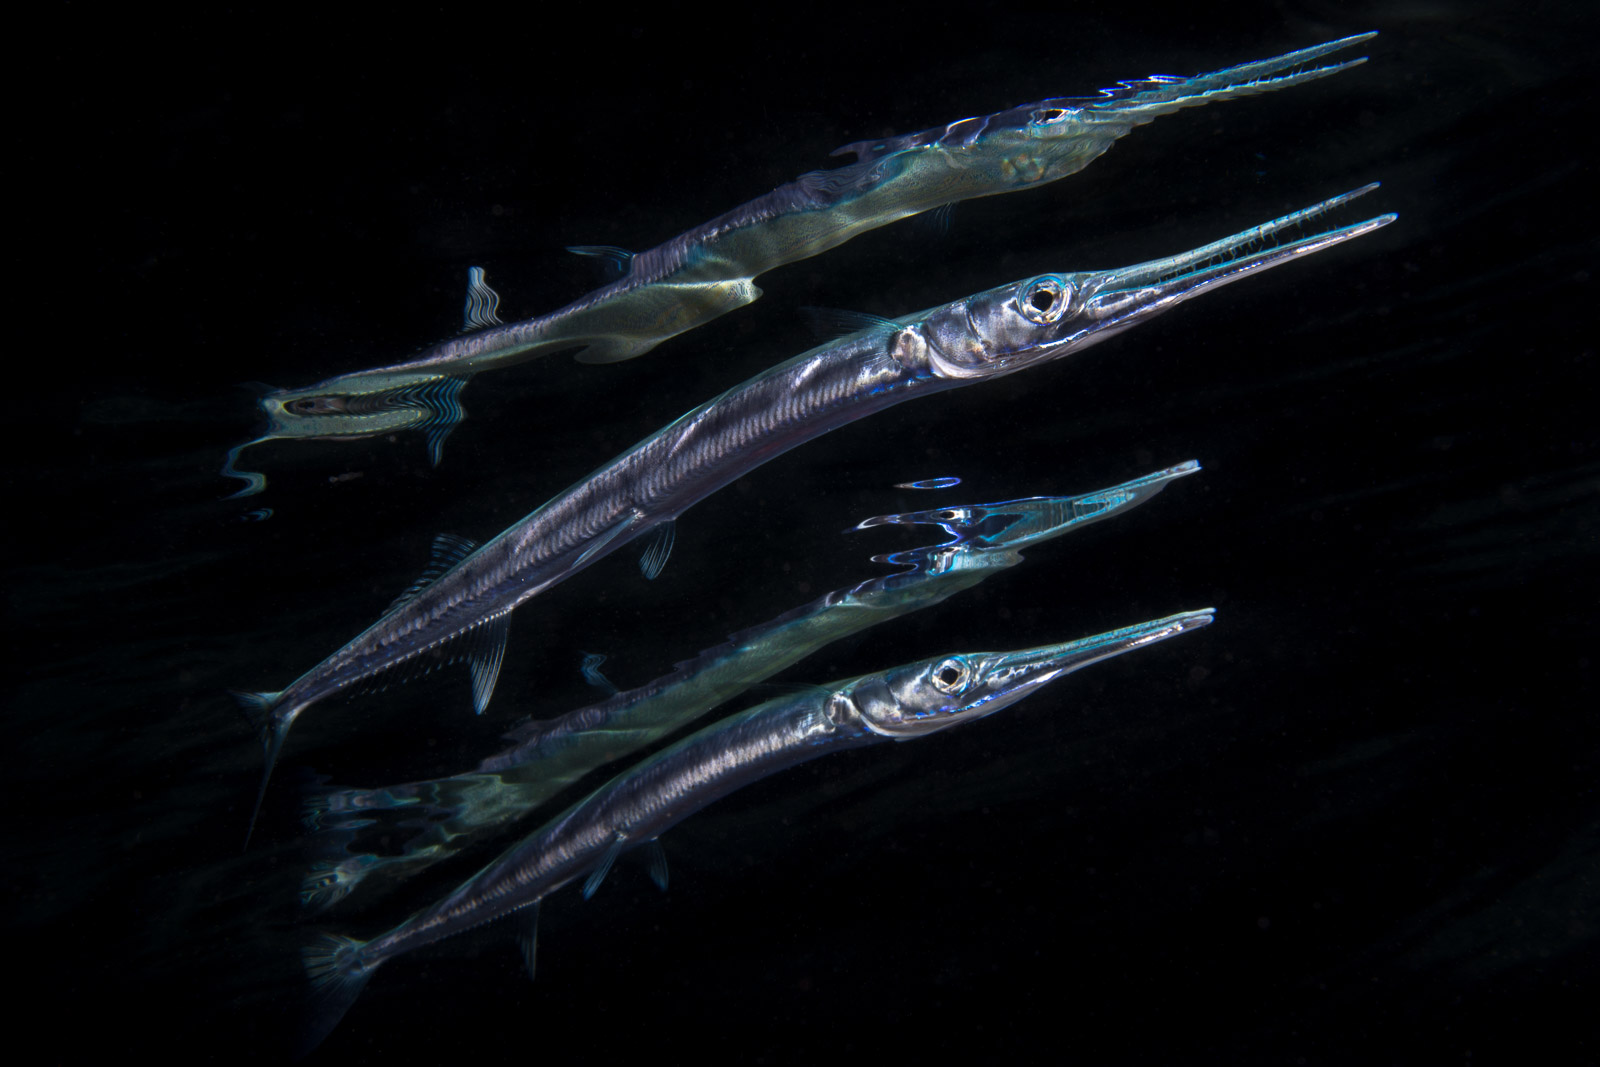 Tobias Dahlin squid image